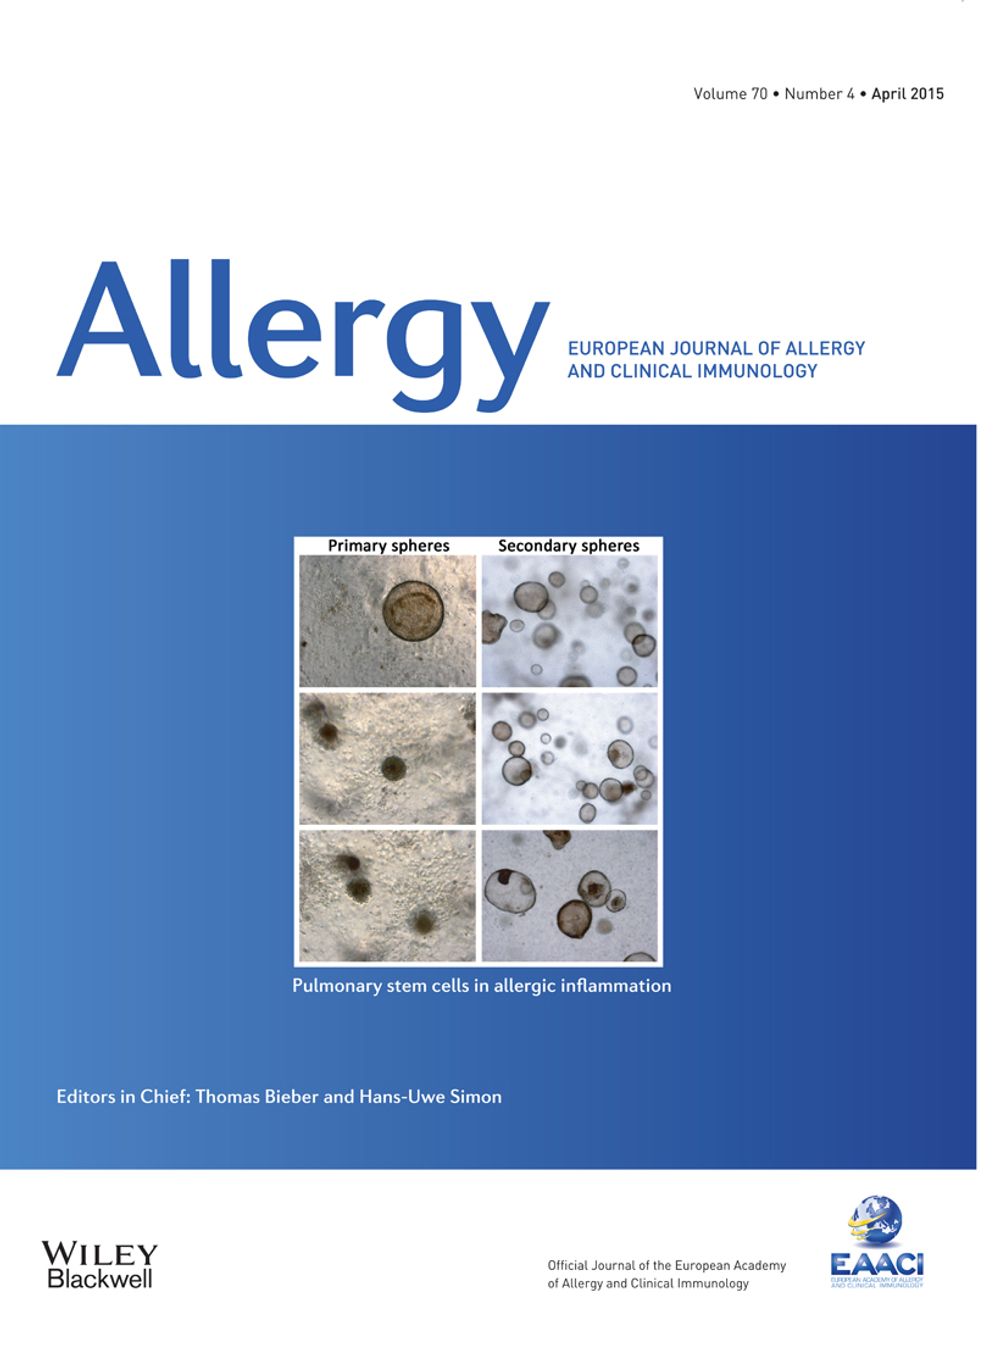  肺部幹細胞研究當選 [Allergy] 當期期刊封面。